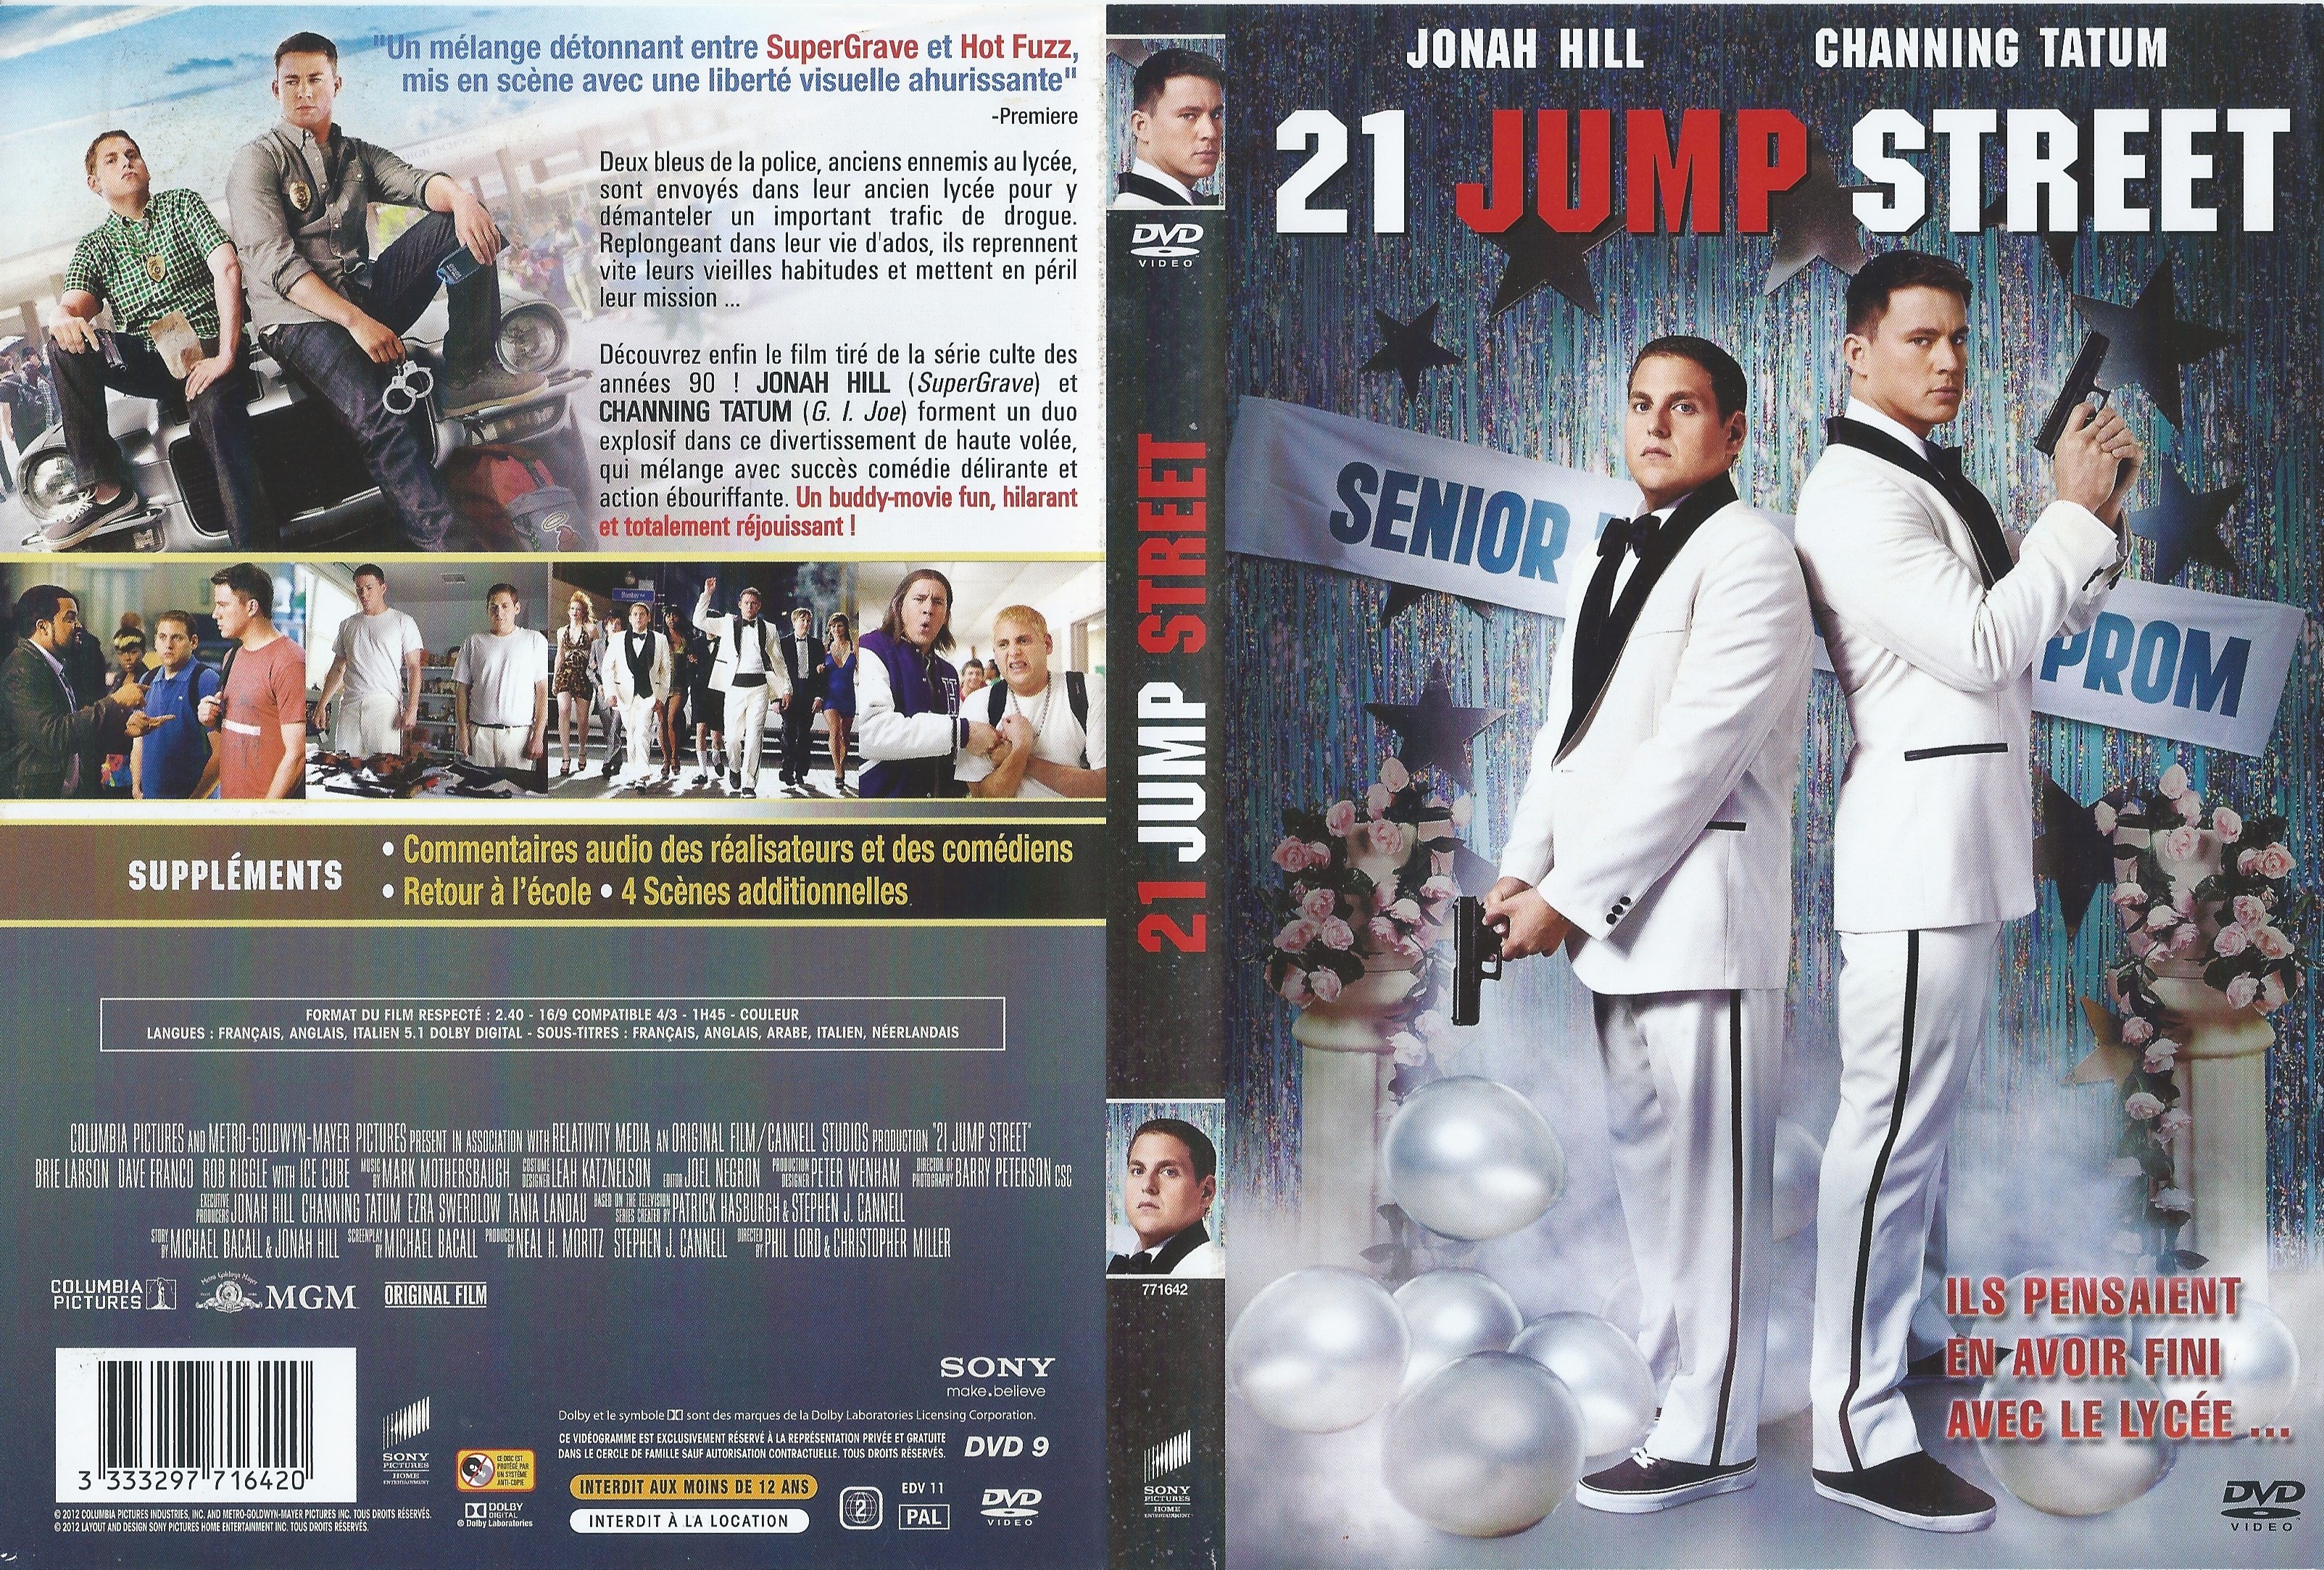 Jaquette DVD 21 jump street